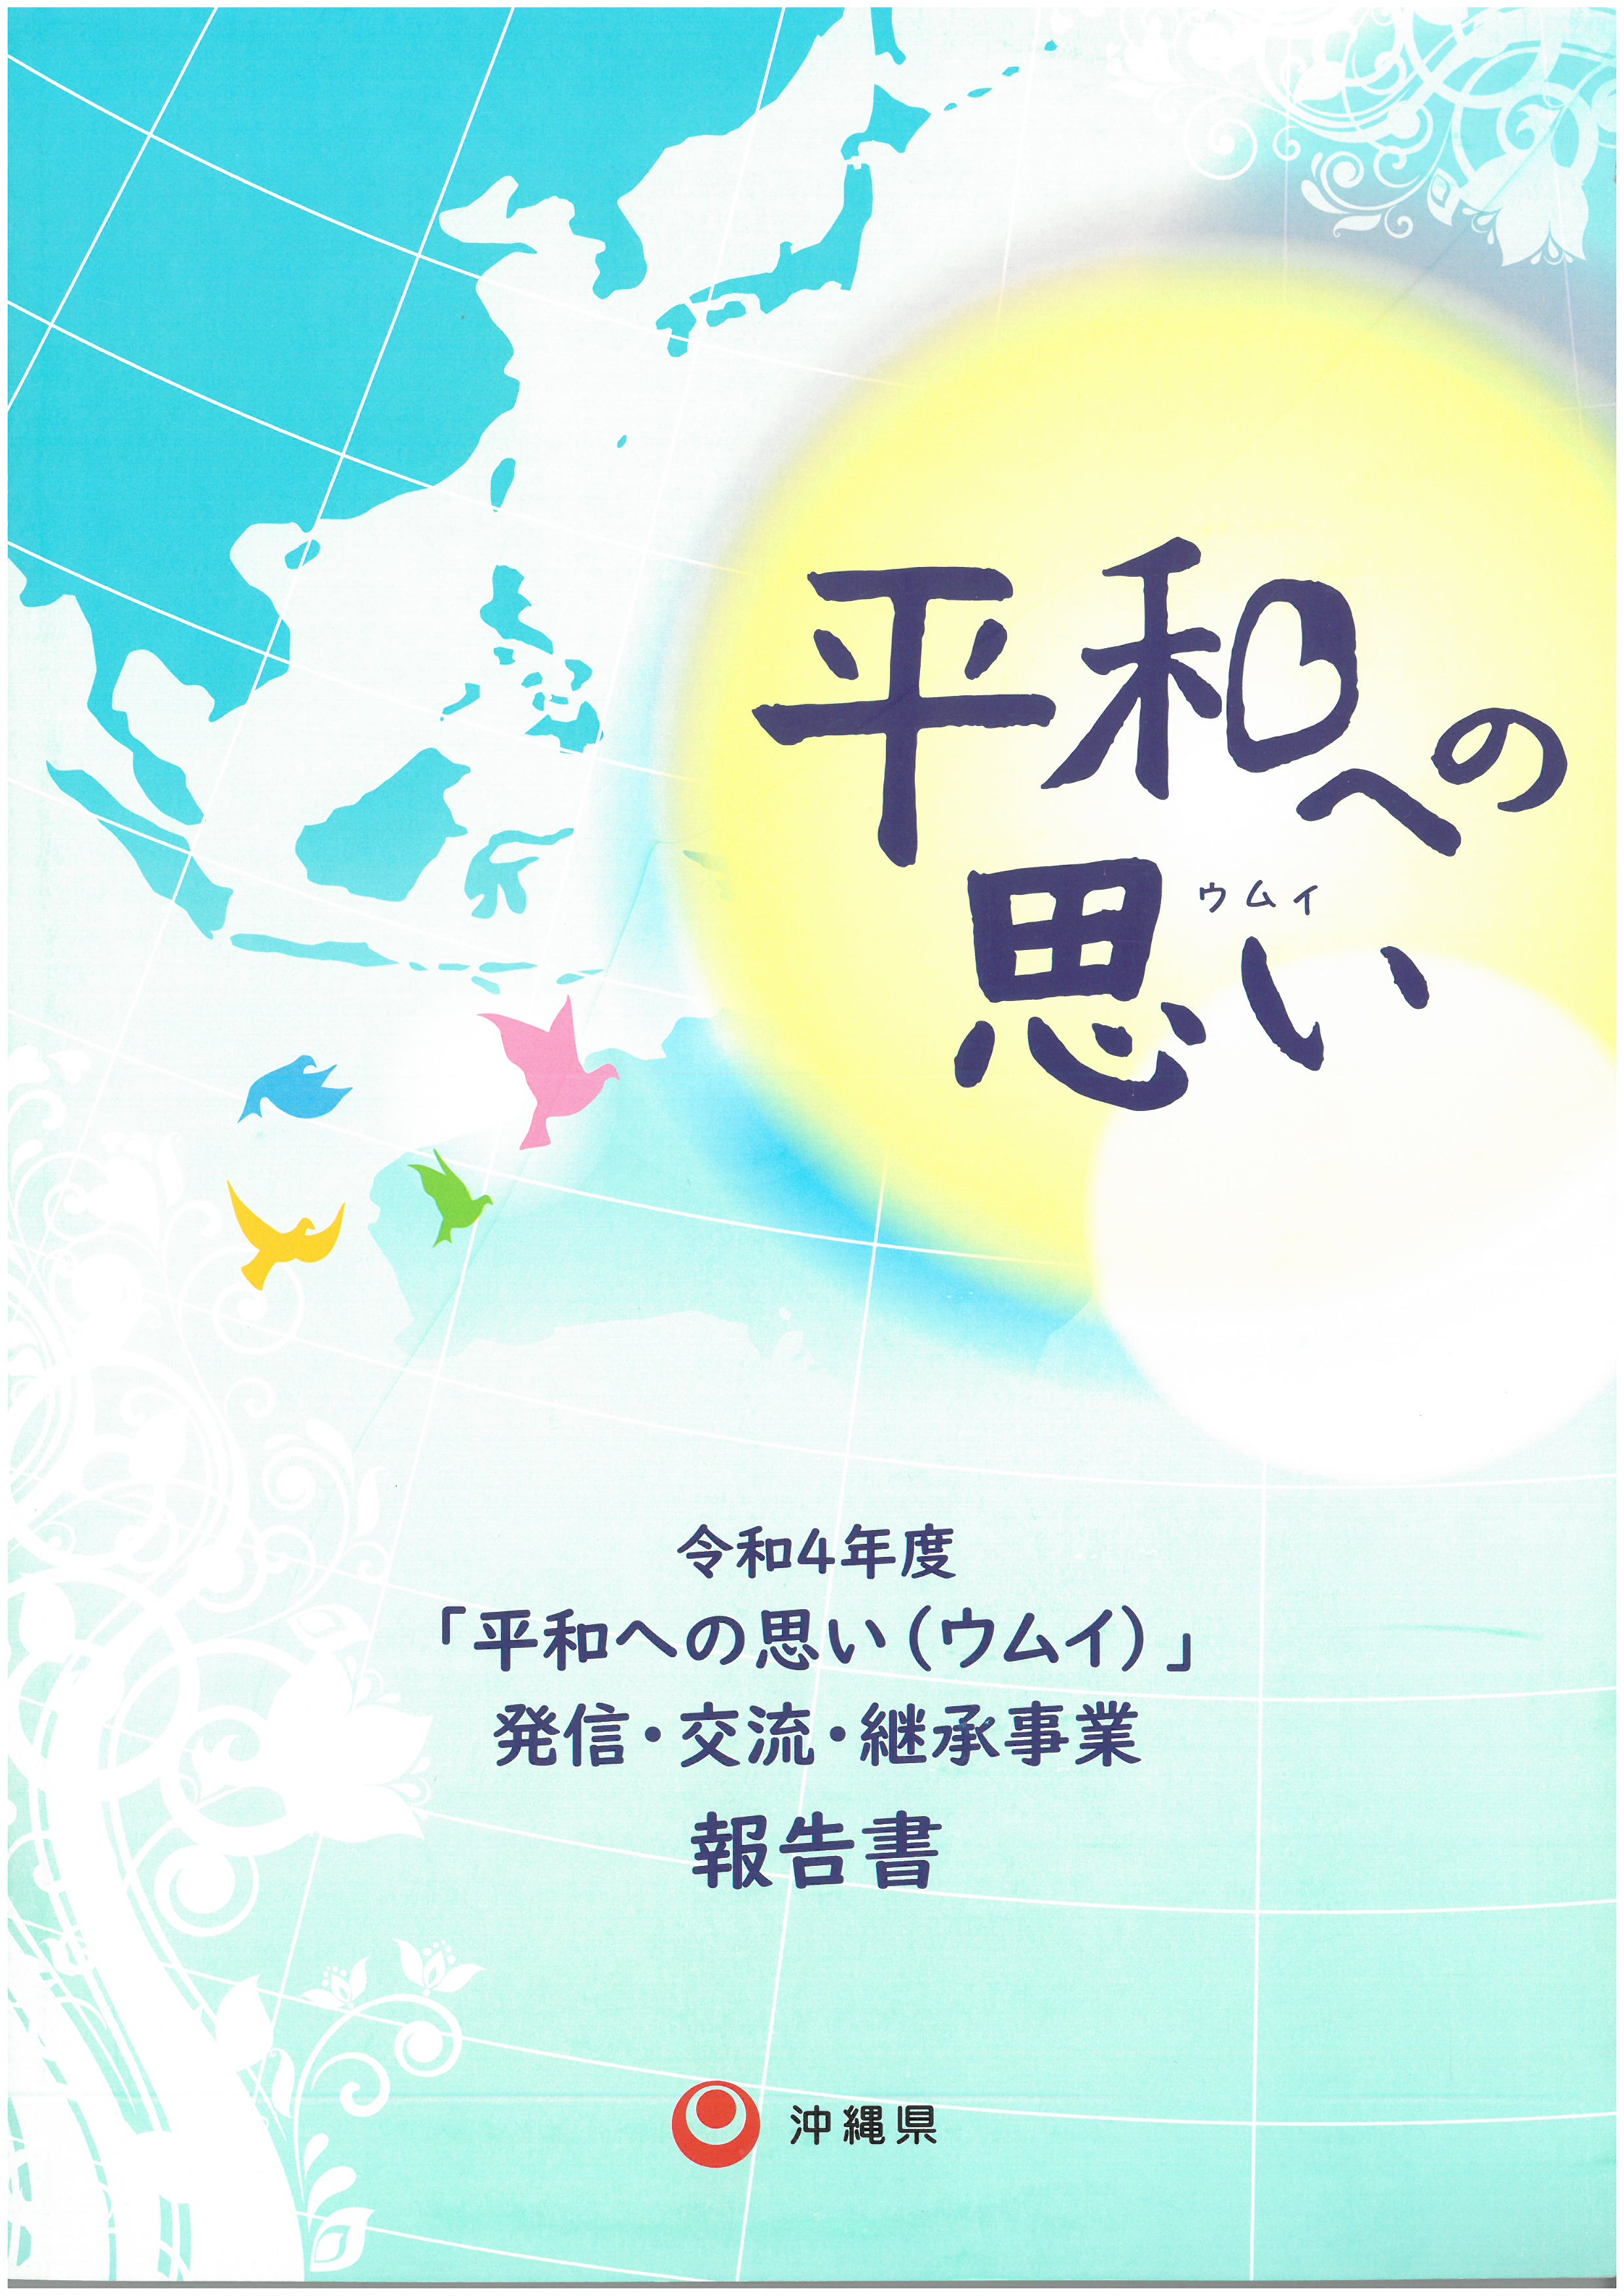 2022.11.6-13 沖繩思考和平國際工作坊